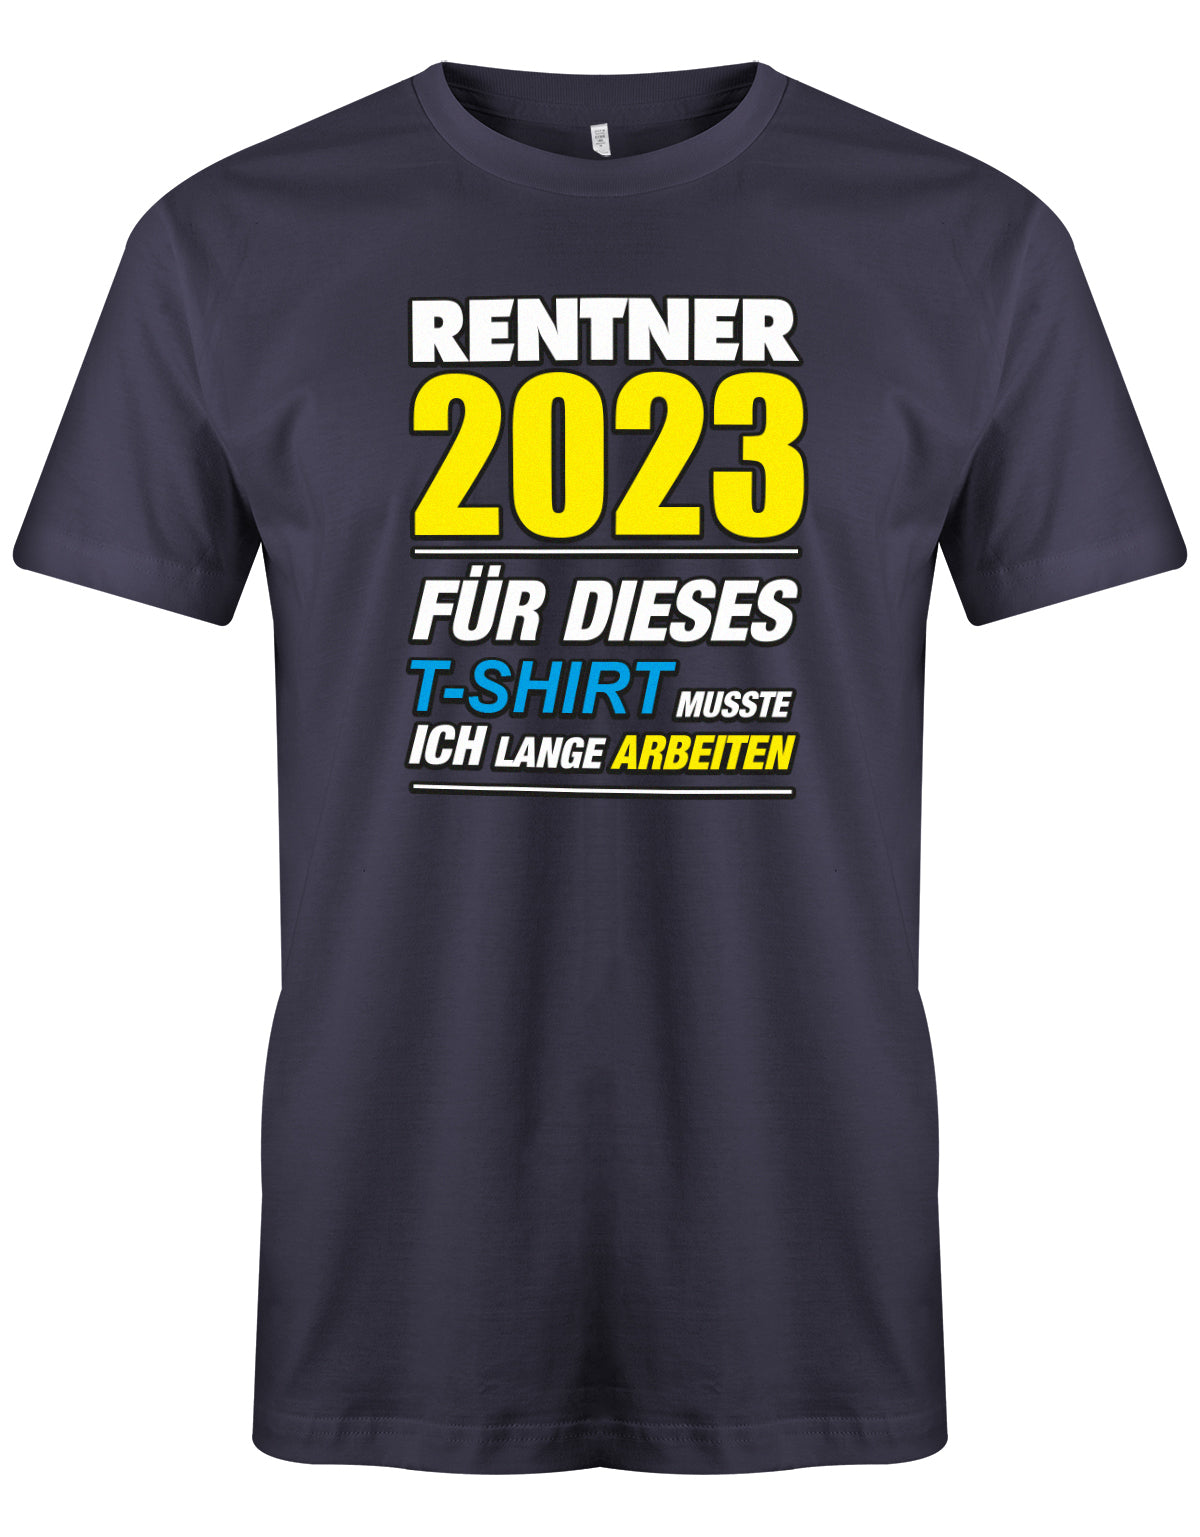 Rentner 2023 für dieses T-Shirt musste ich lange arbeiten - Männer T-Shirt Navy